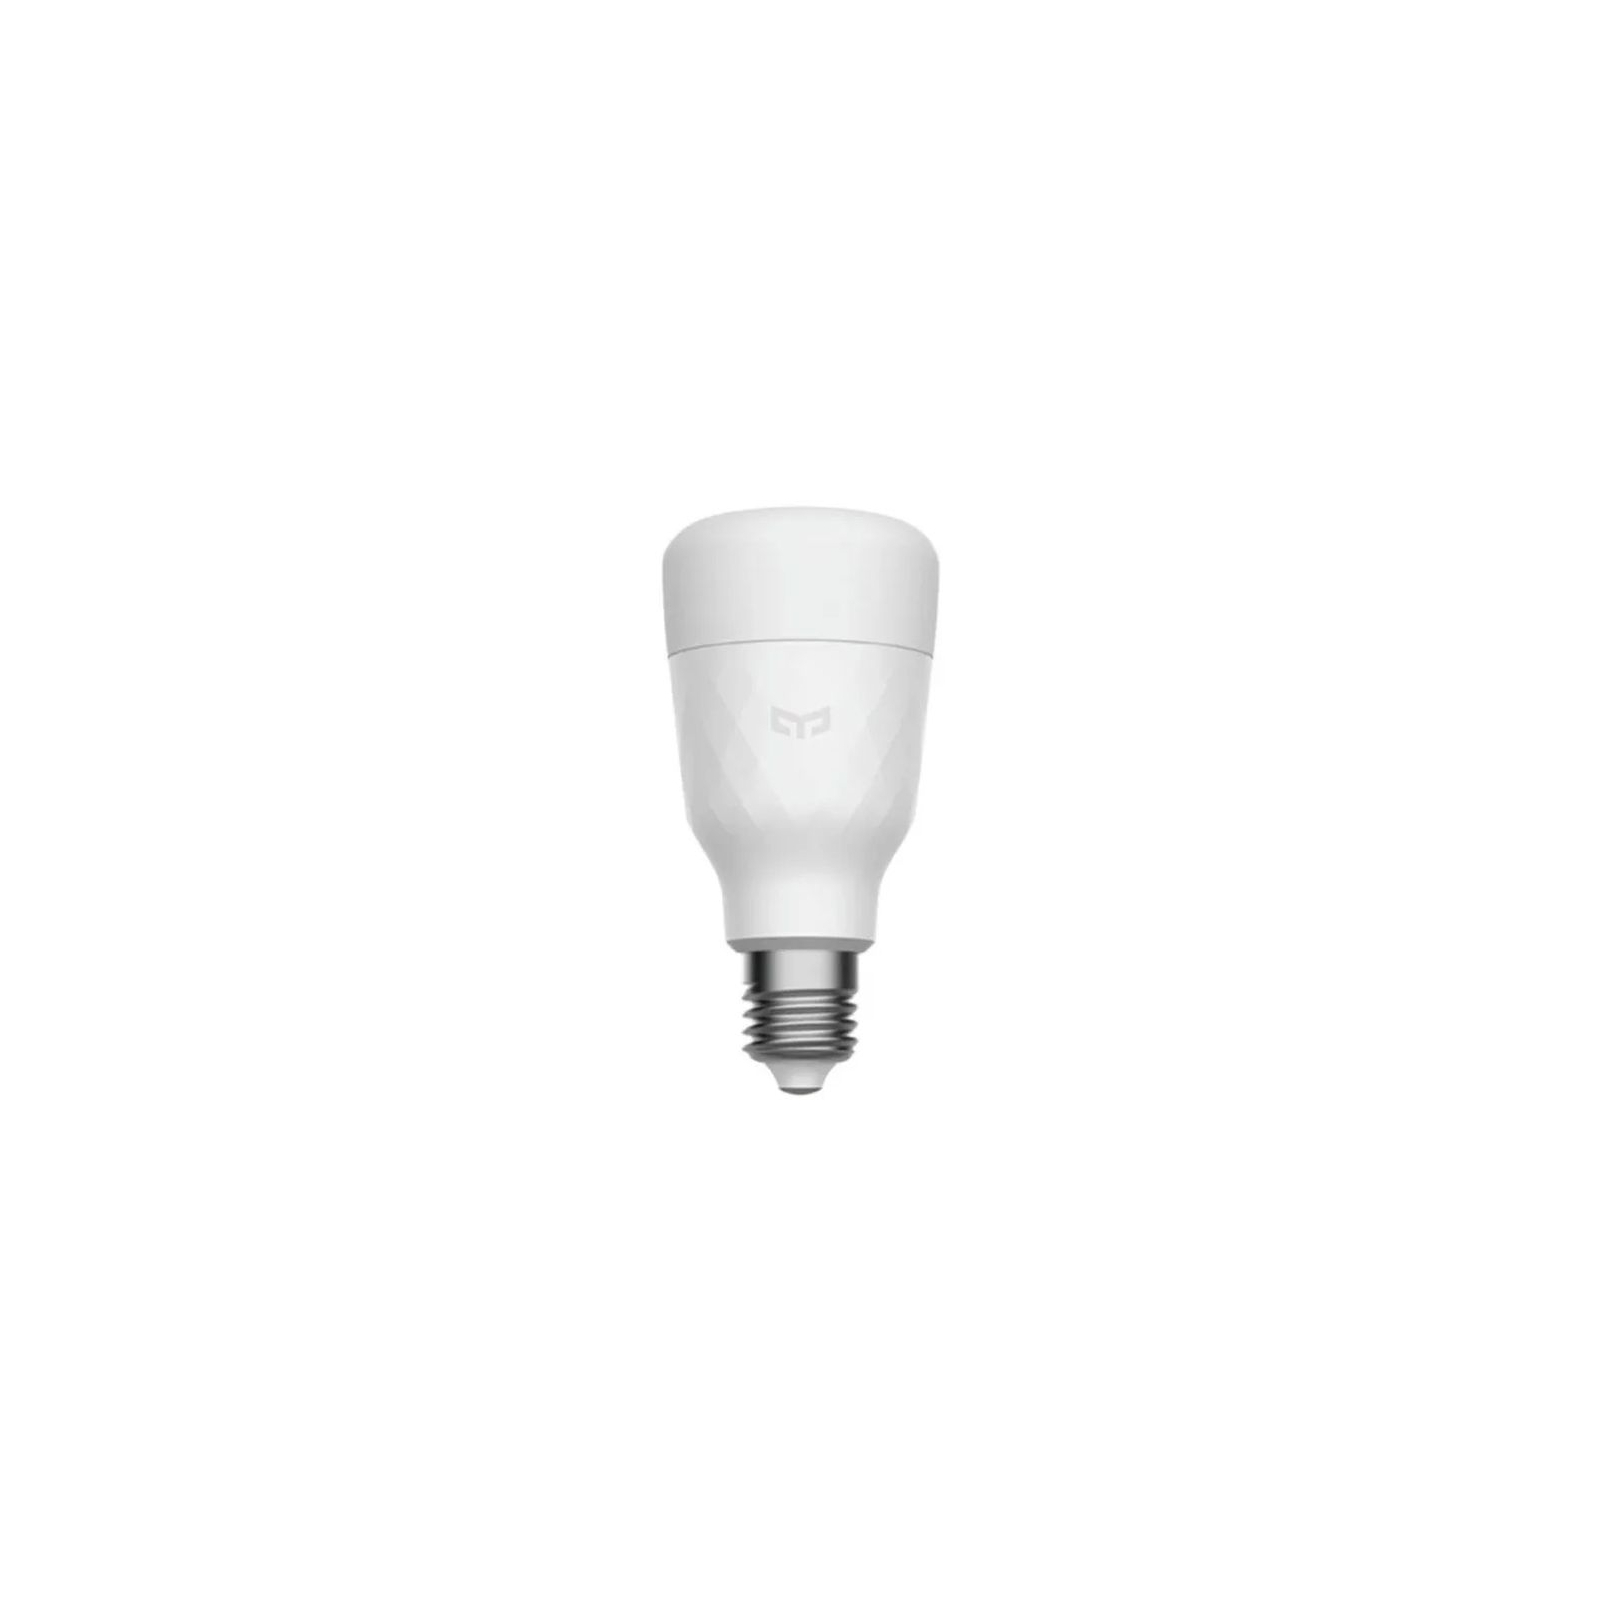 Розумна лампочка Yeelight Smart LED Bulb W3(White) (YLDP007) зображення 2